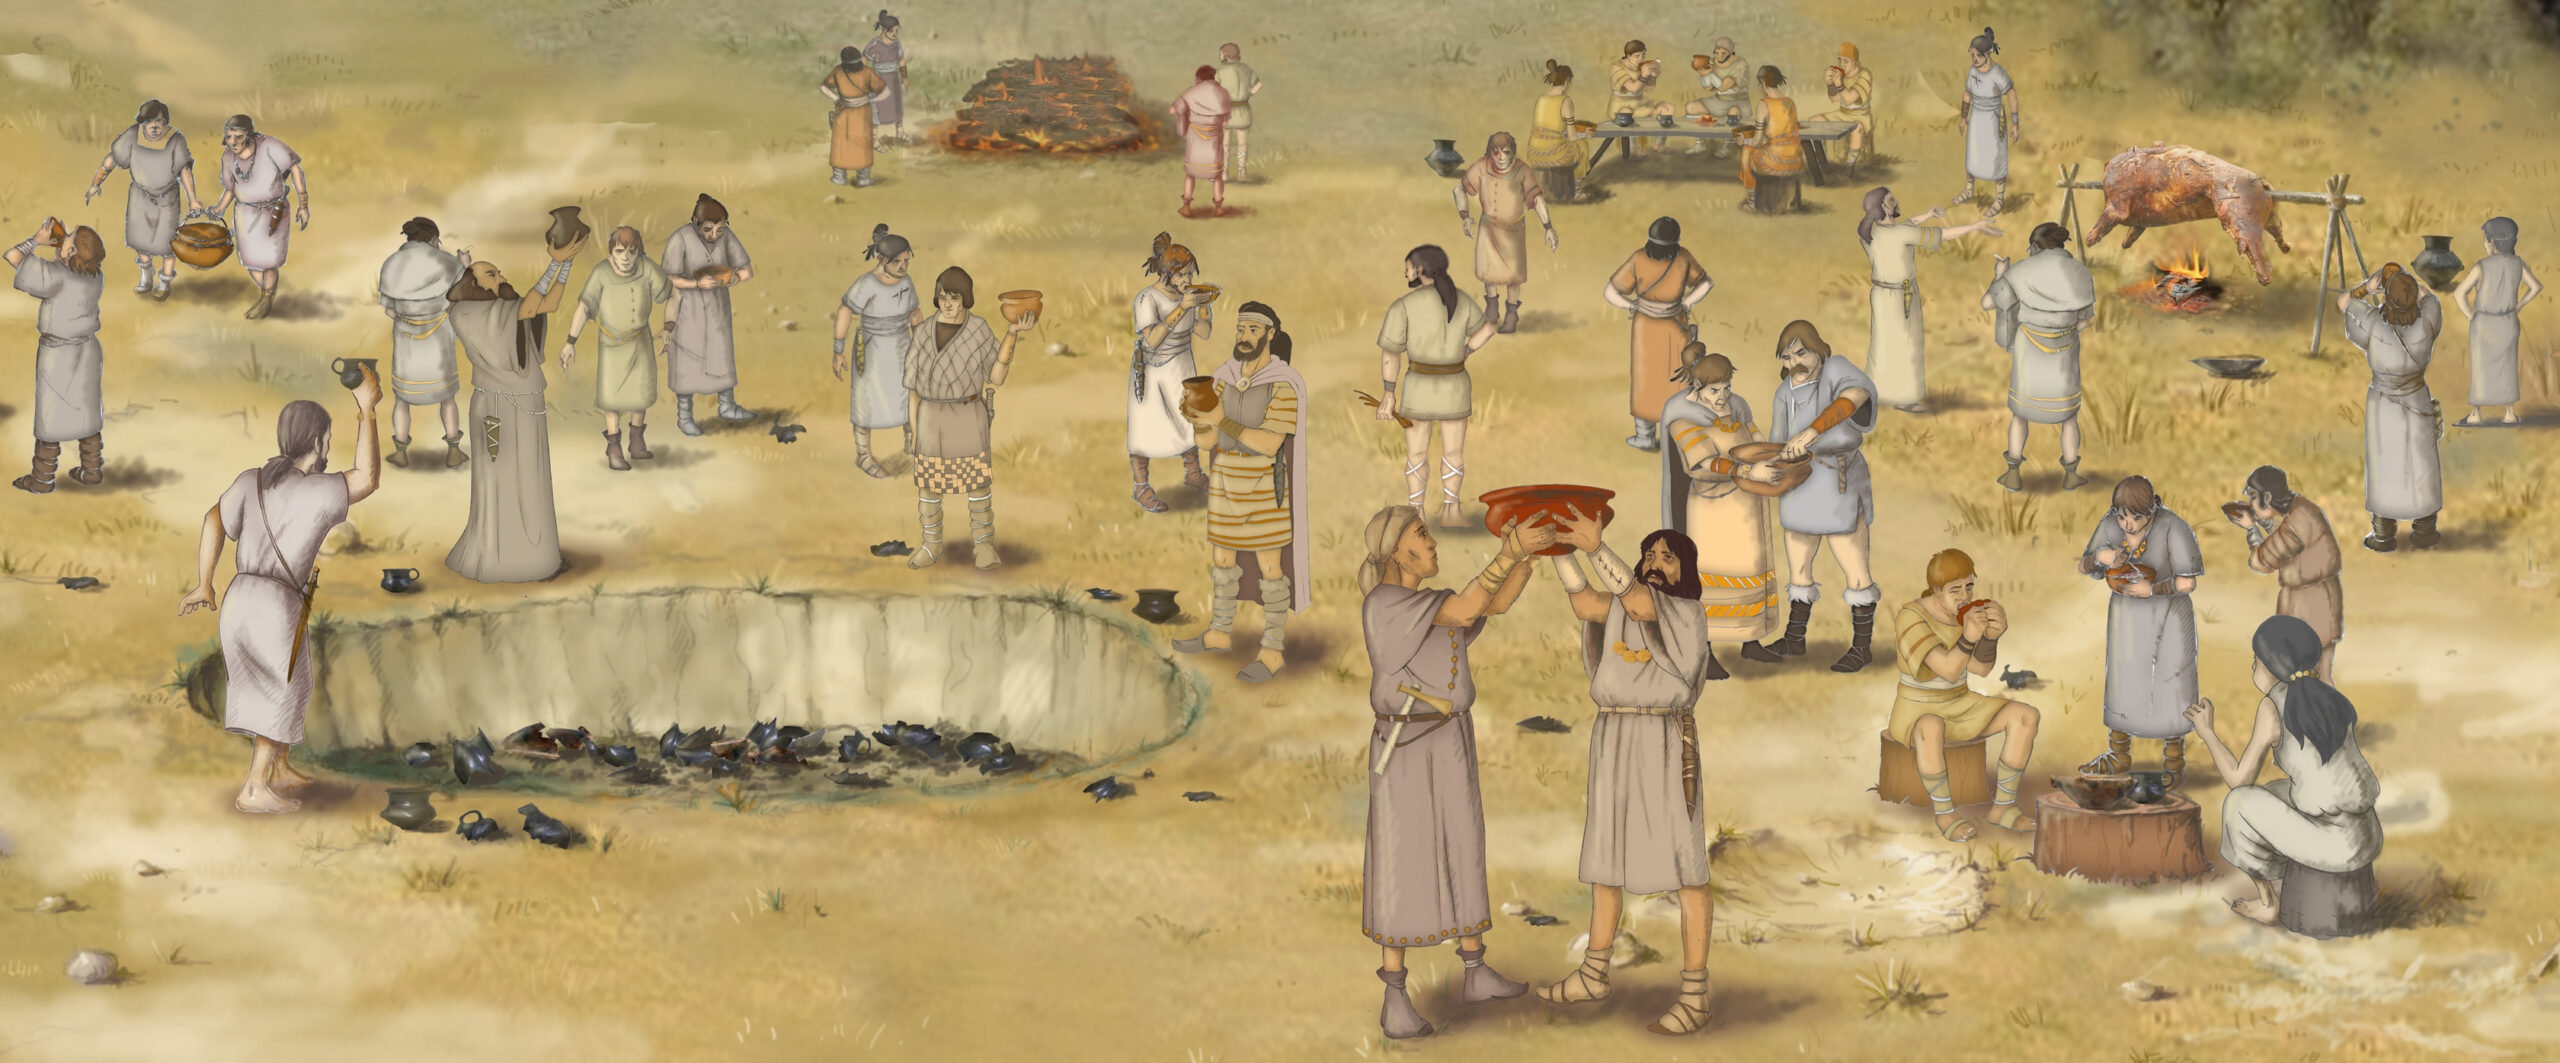 A XI. ker. Október huszonharmadika utcai lelőhelyen feltárt késő bronzkori edénydepó földbe kerülése rituáléjának elméleti rekonstrukciója (rajz: Dörnyei Péter)